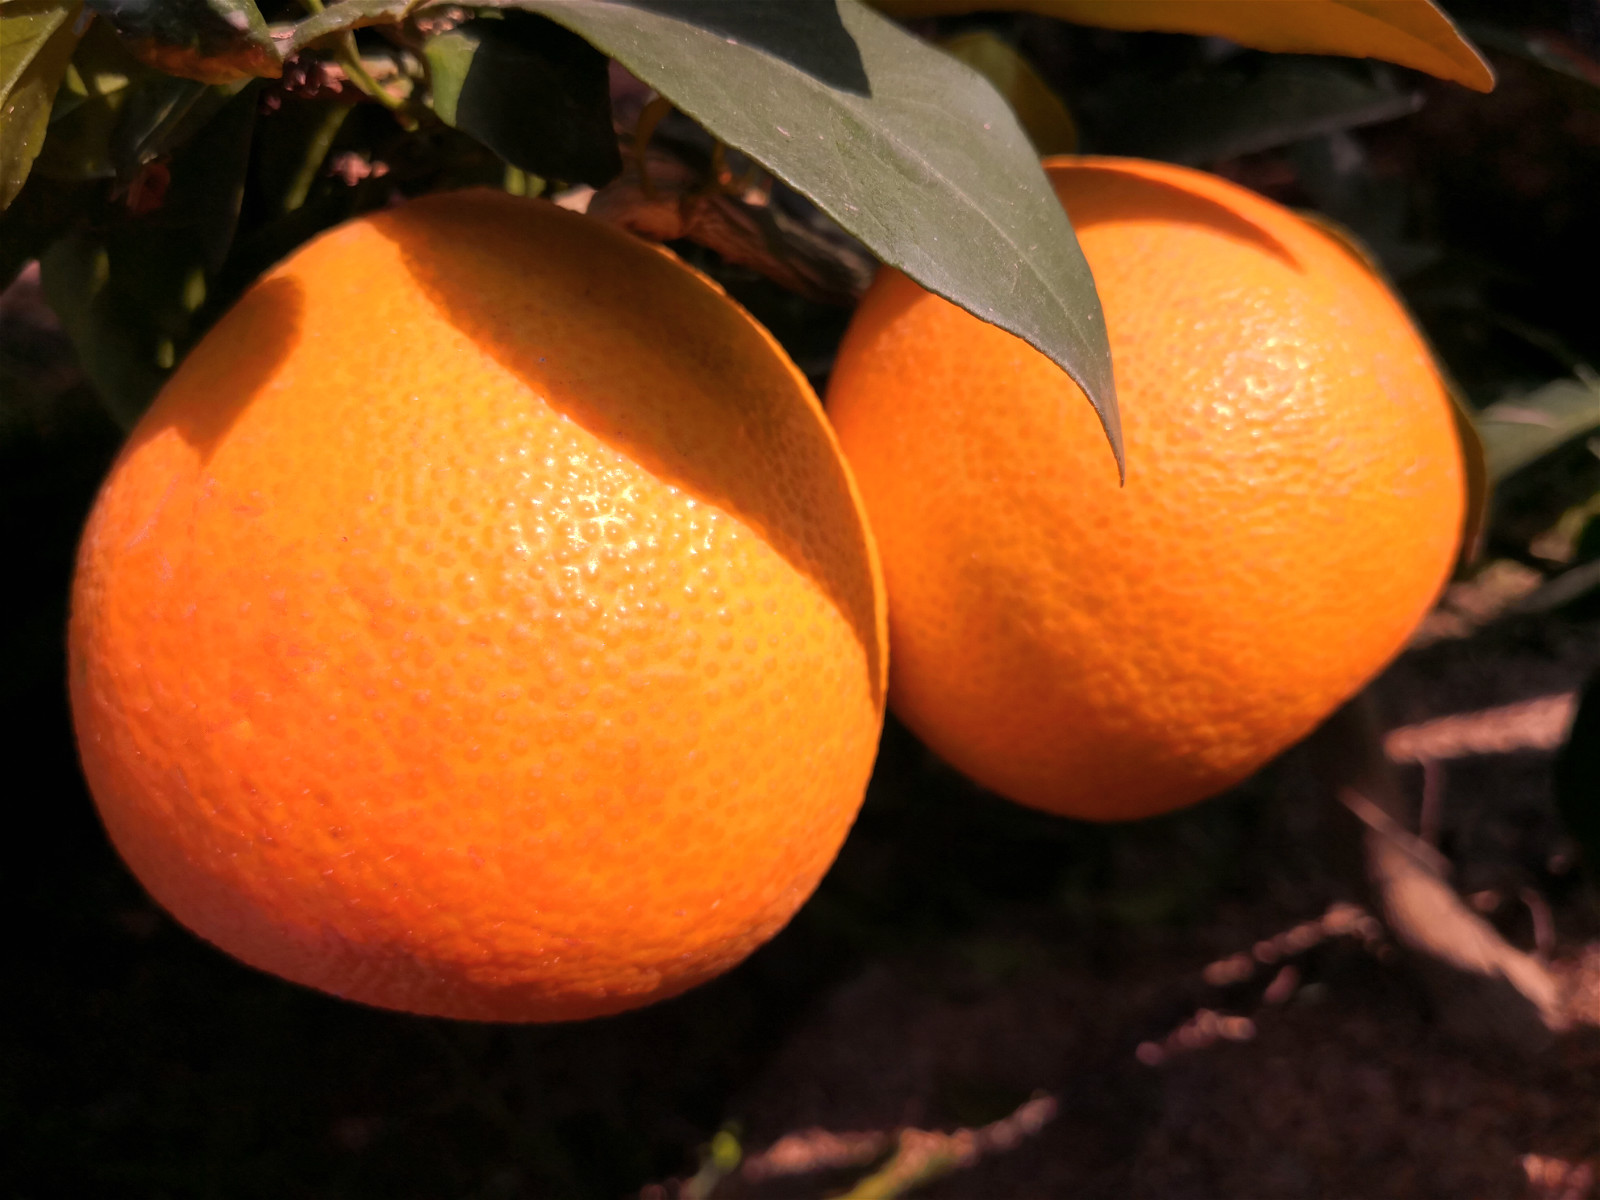 湖南红美人柑橘苗 早熟日本无核杂柑品种 11月份成熟